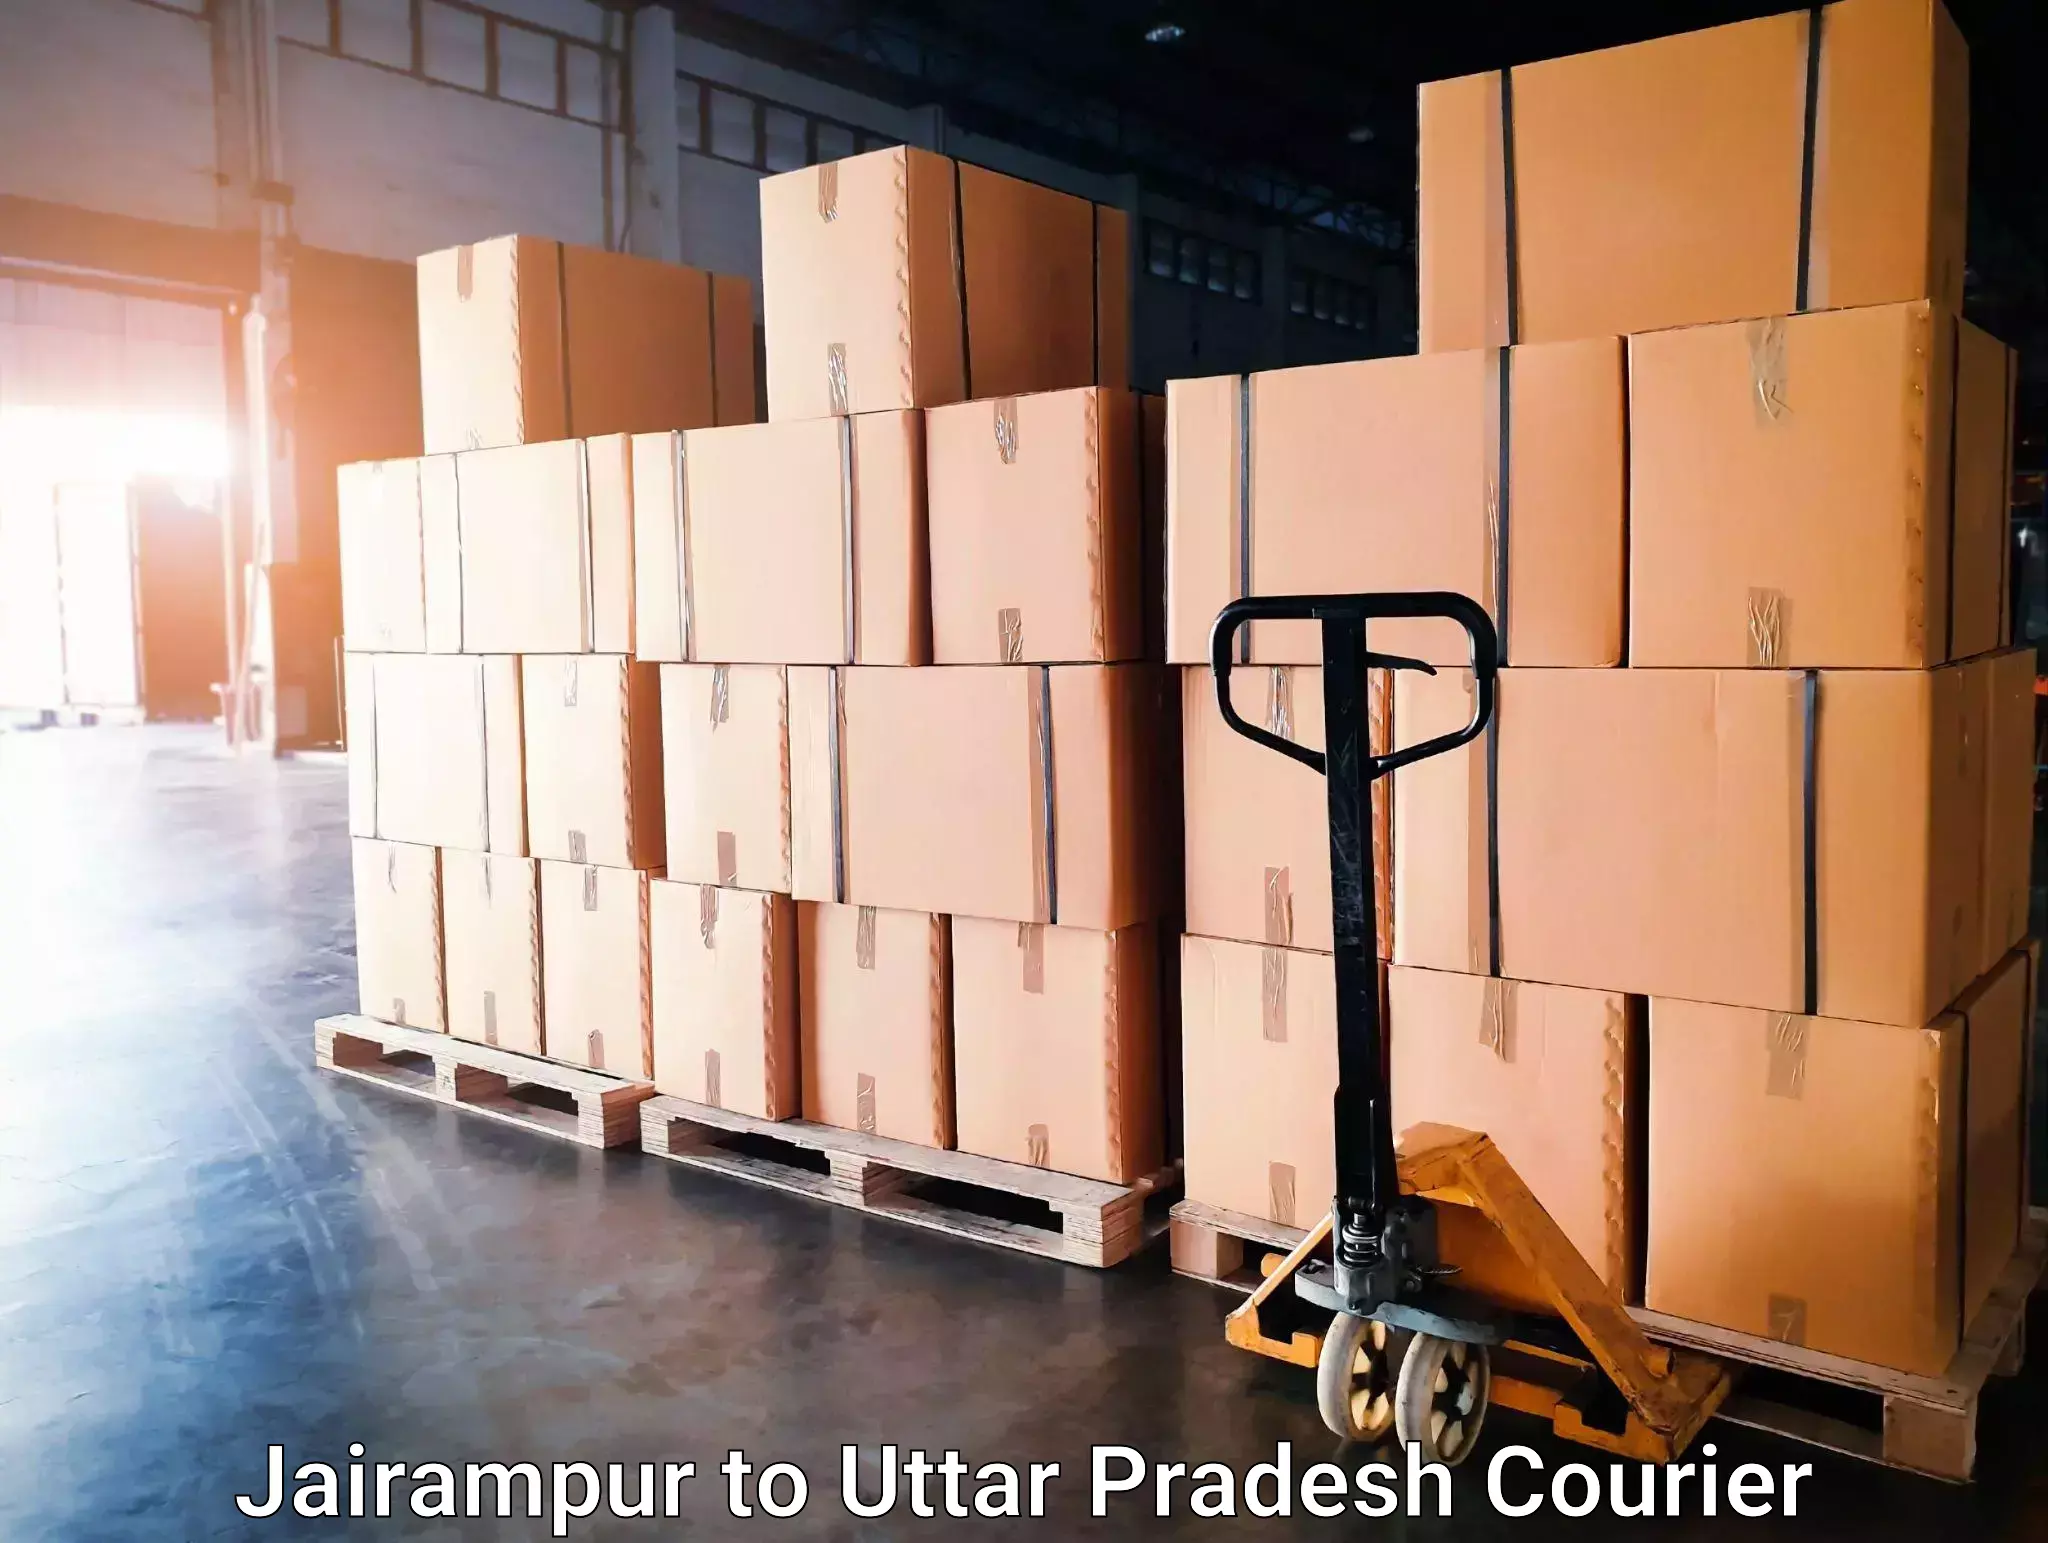 Personal courier services in Jairampur to Gauri Bazar